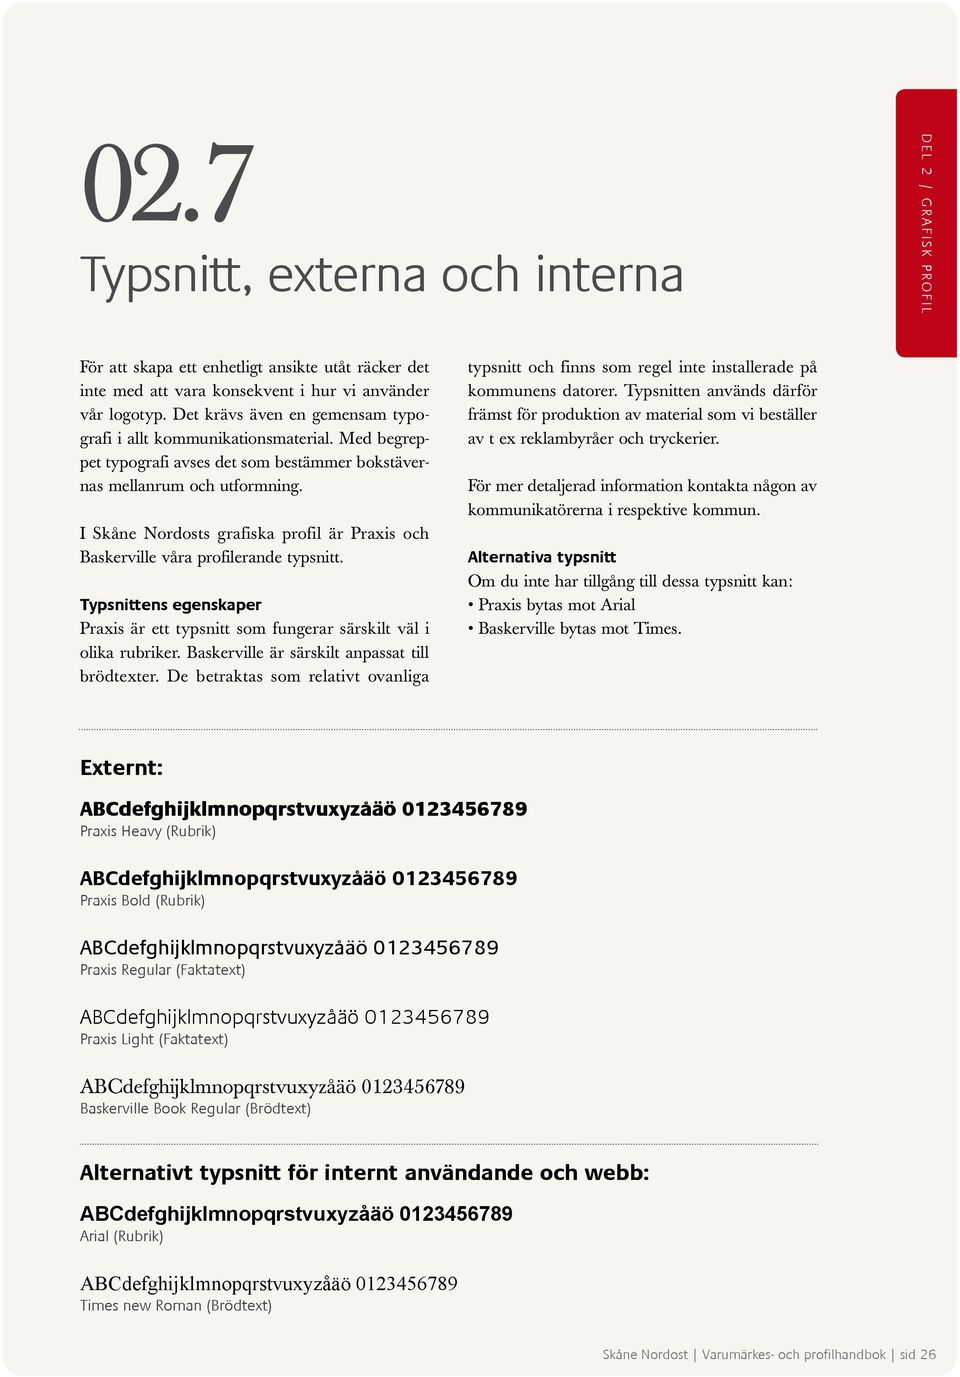 I Skåne Nordosts grafiska profil är Praxis och Baskerville våra profilerande typsnitt. Typsnittens egenskaper Praxis är ett typsnitt som fungerar särskilt väl i olika rubriker.